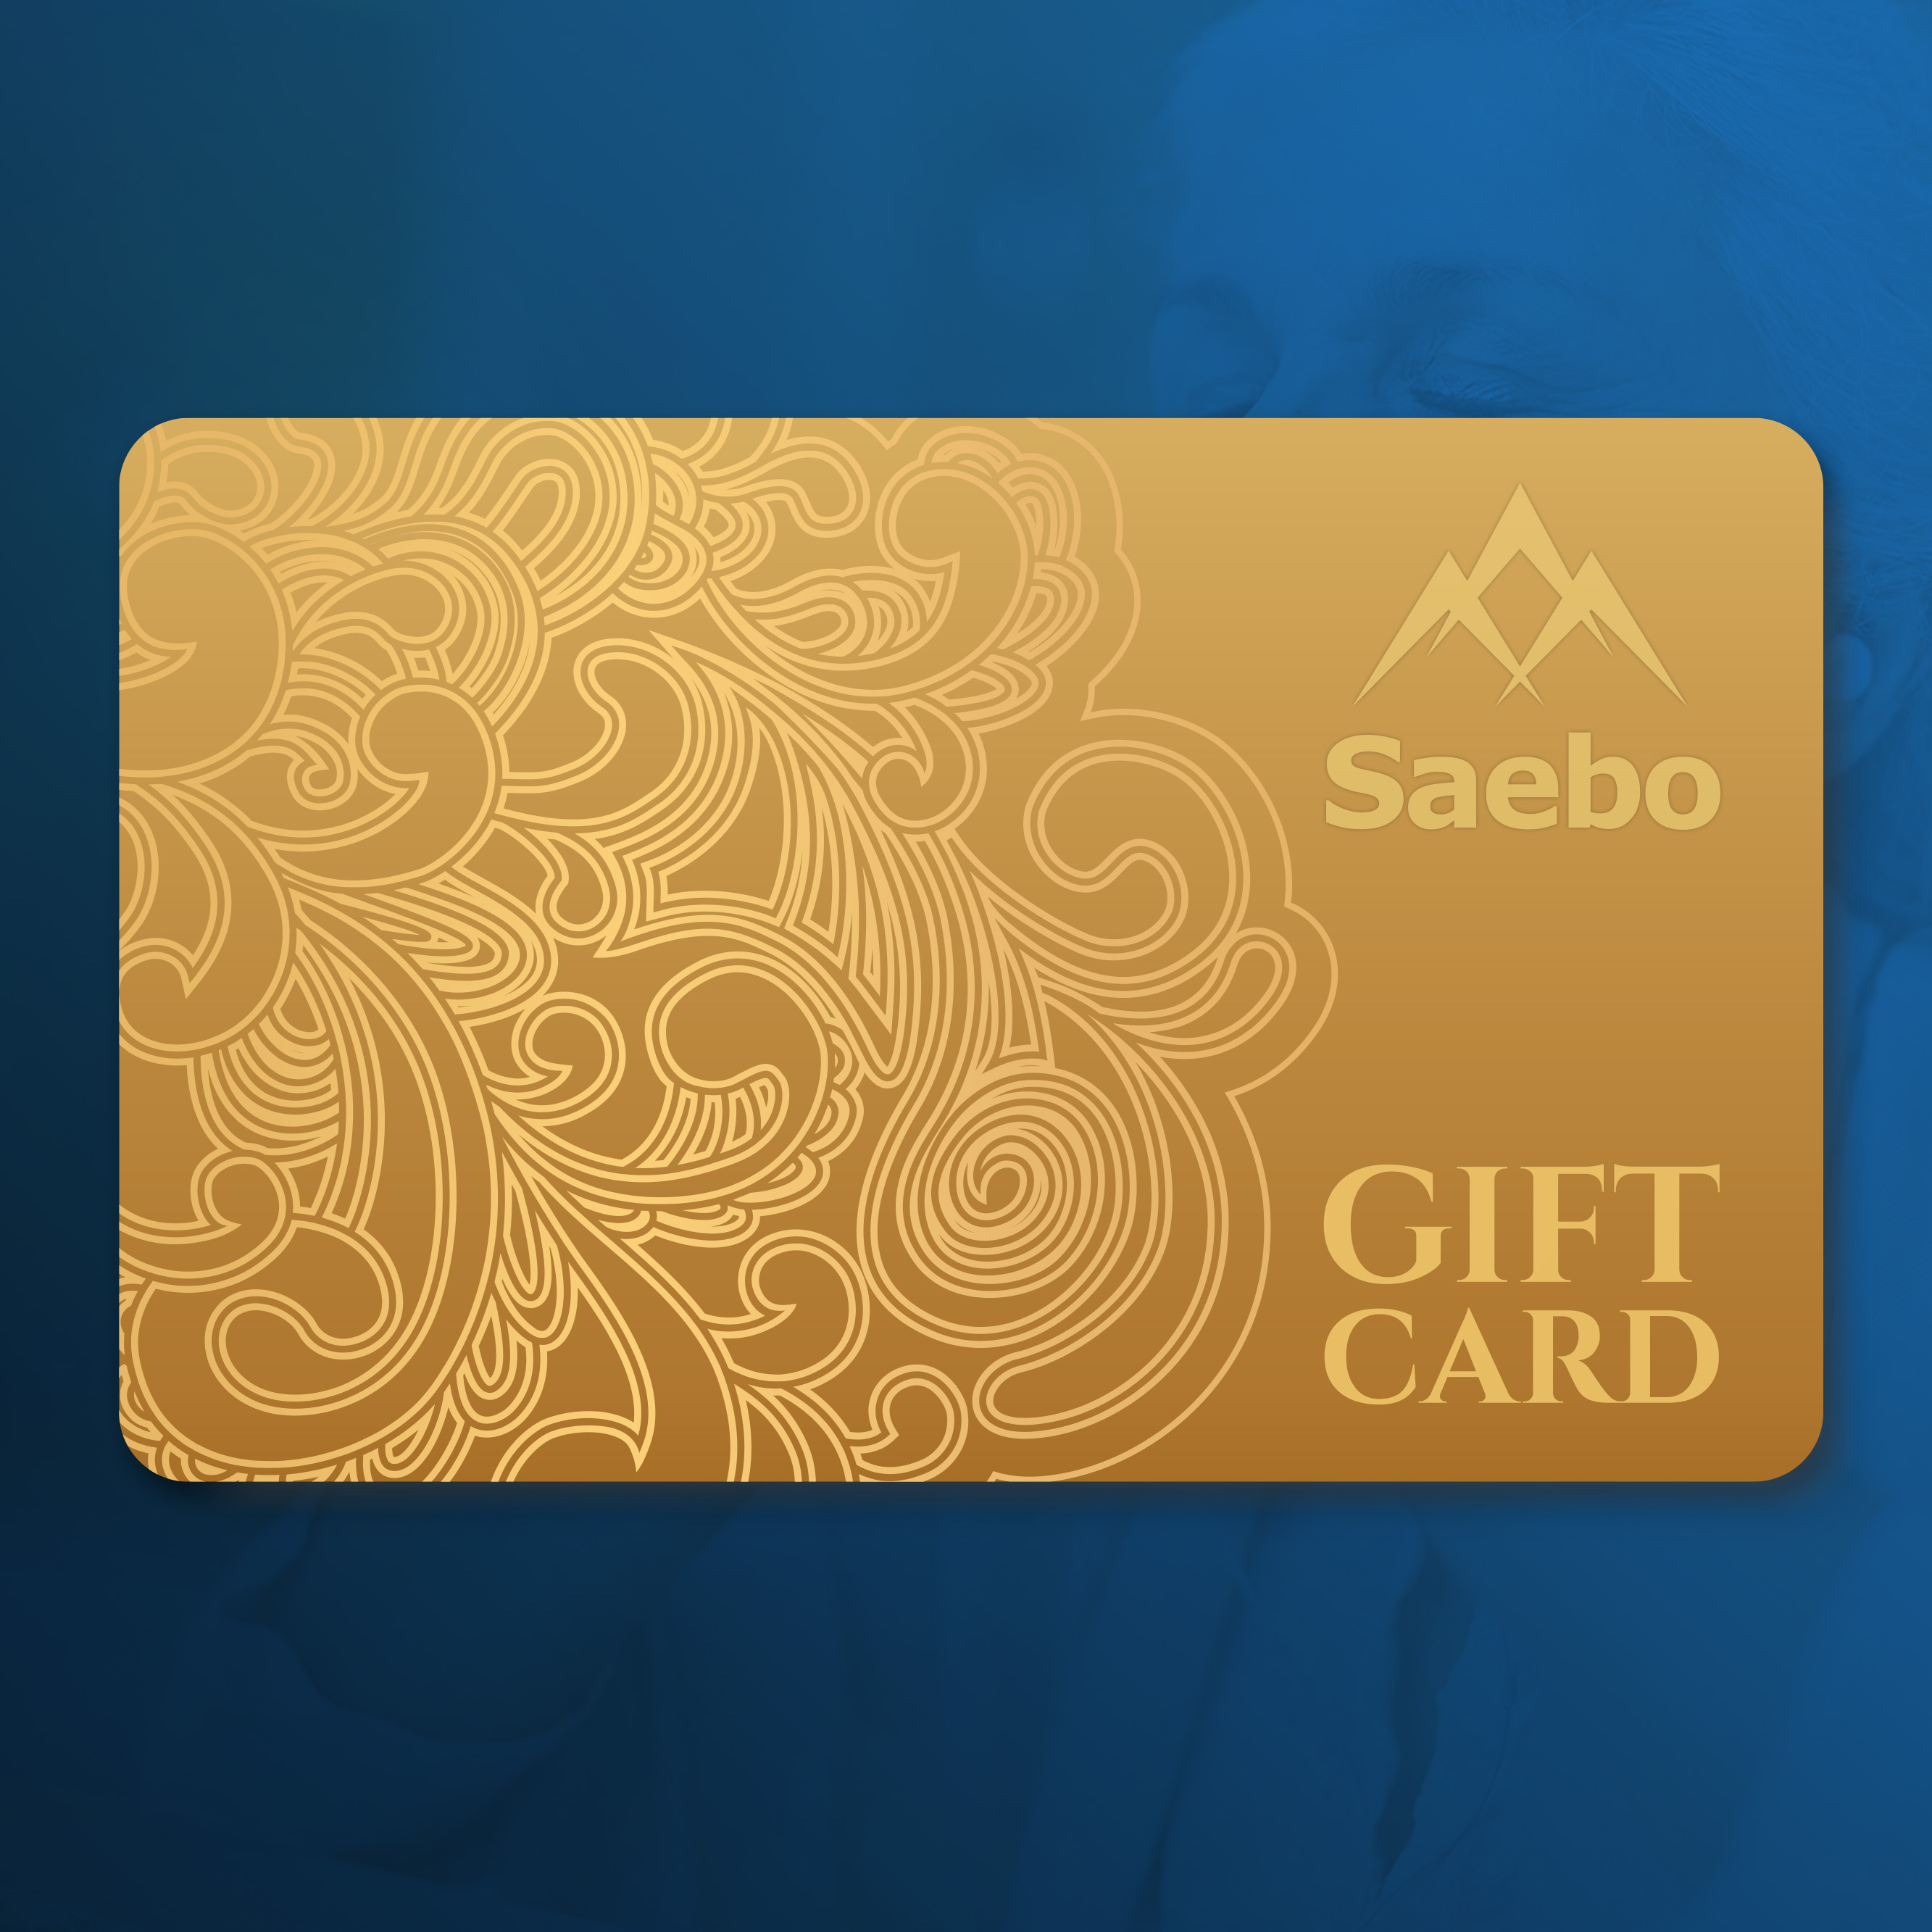 Saebo Gift Card